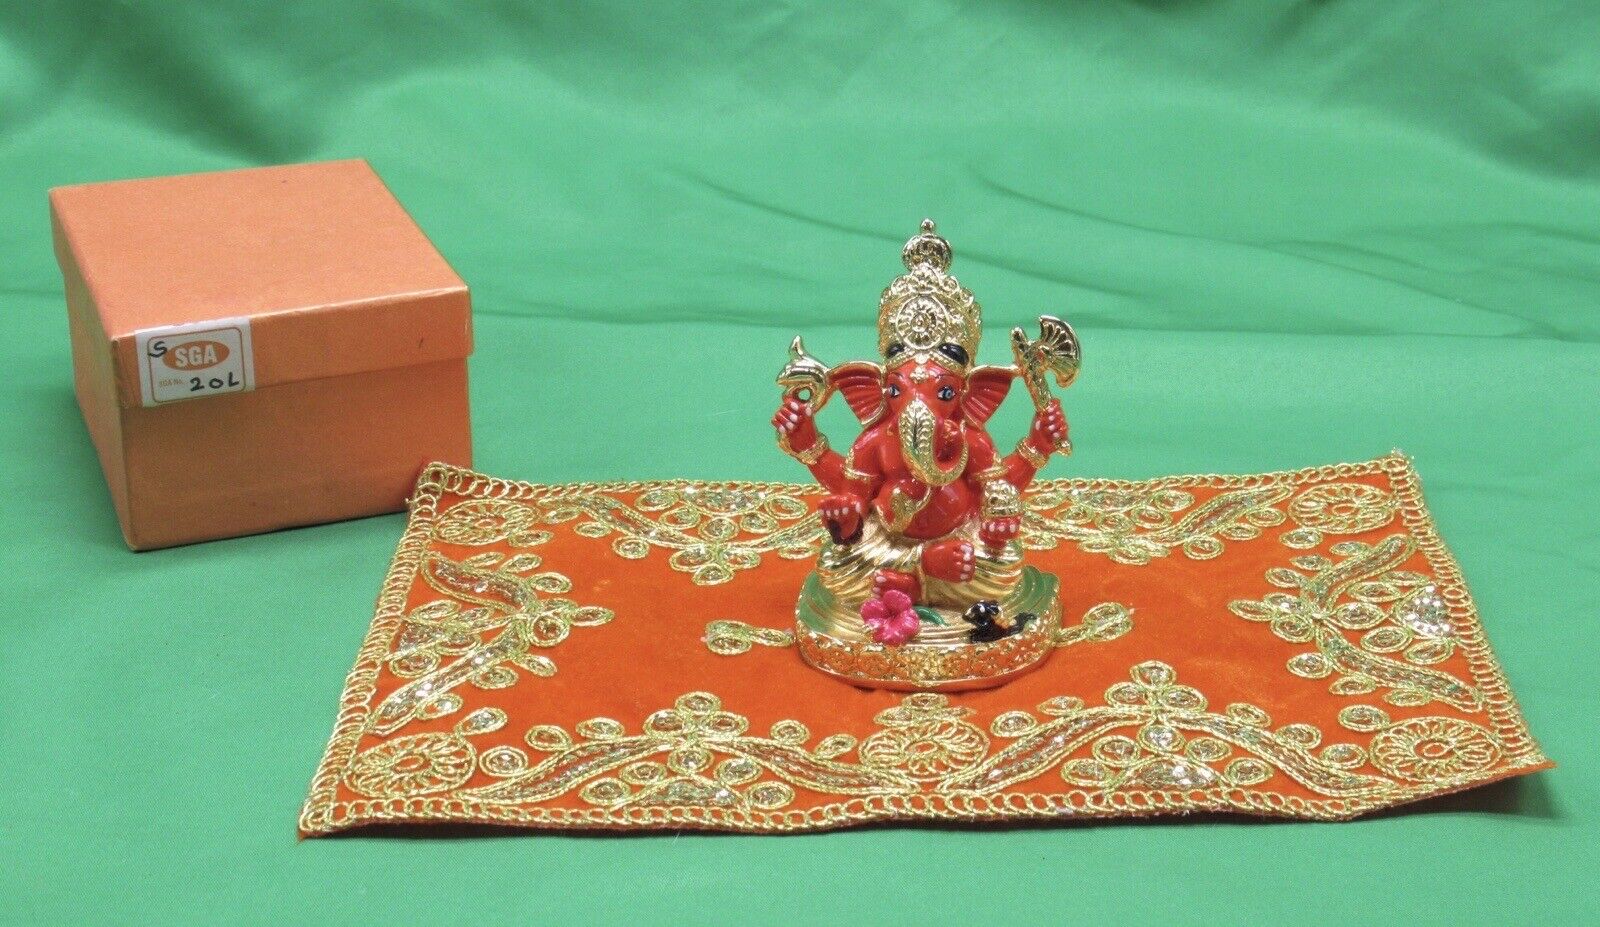 SGA Shri Ganesh Art Lord Ganesha Golden Polish In Original Box With Carpet